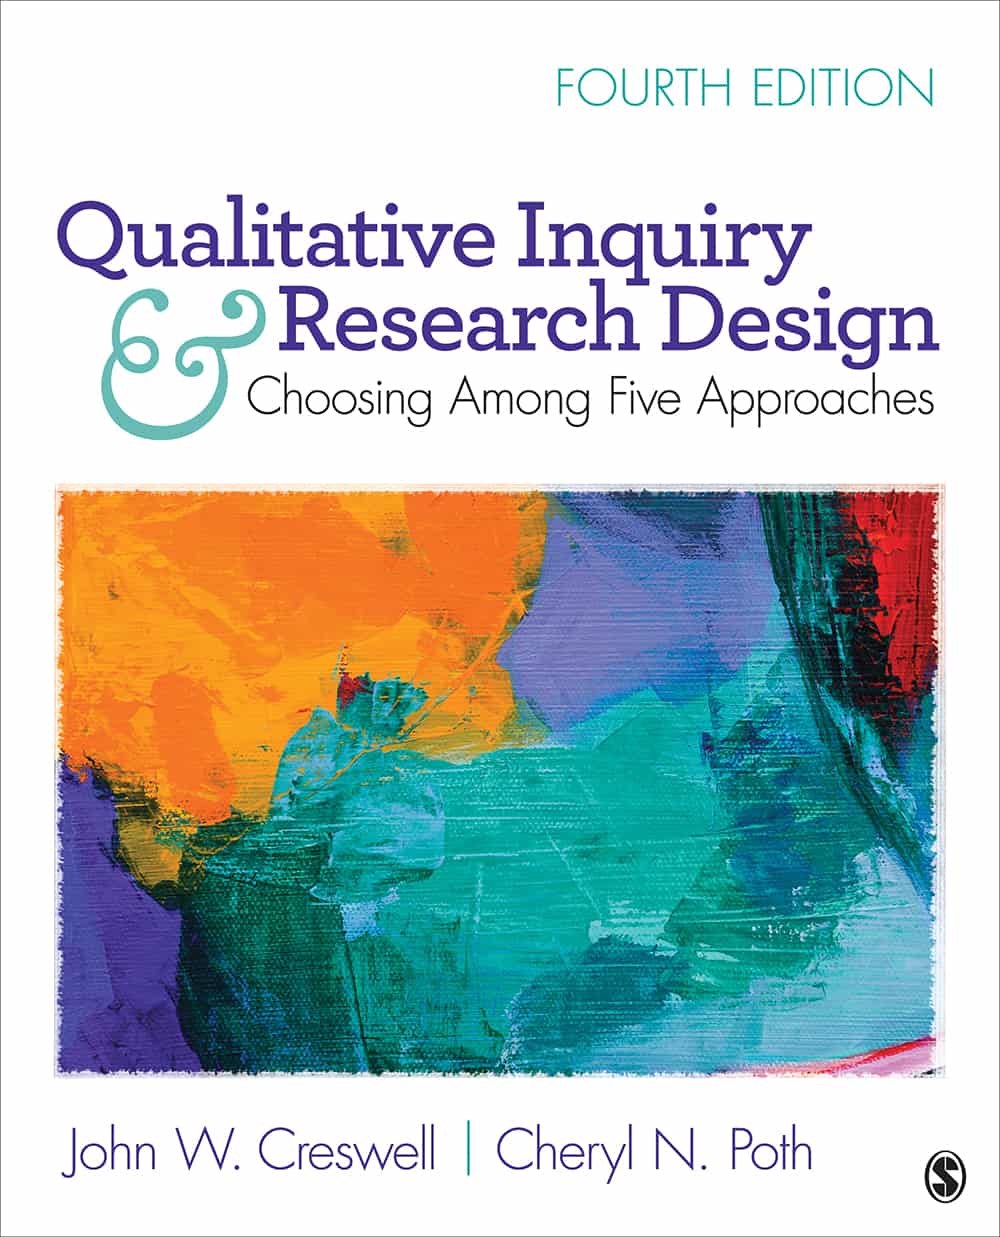 general qualitative inquiry research design